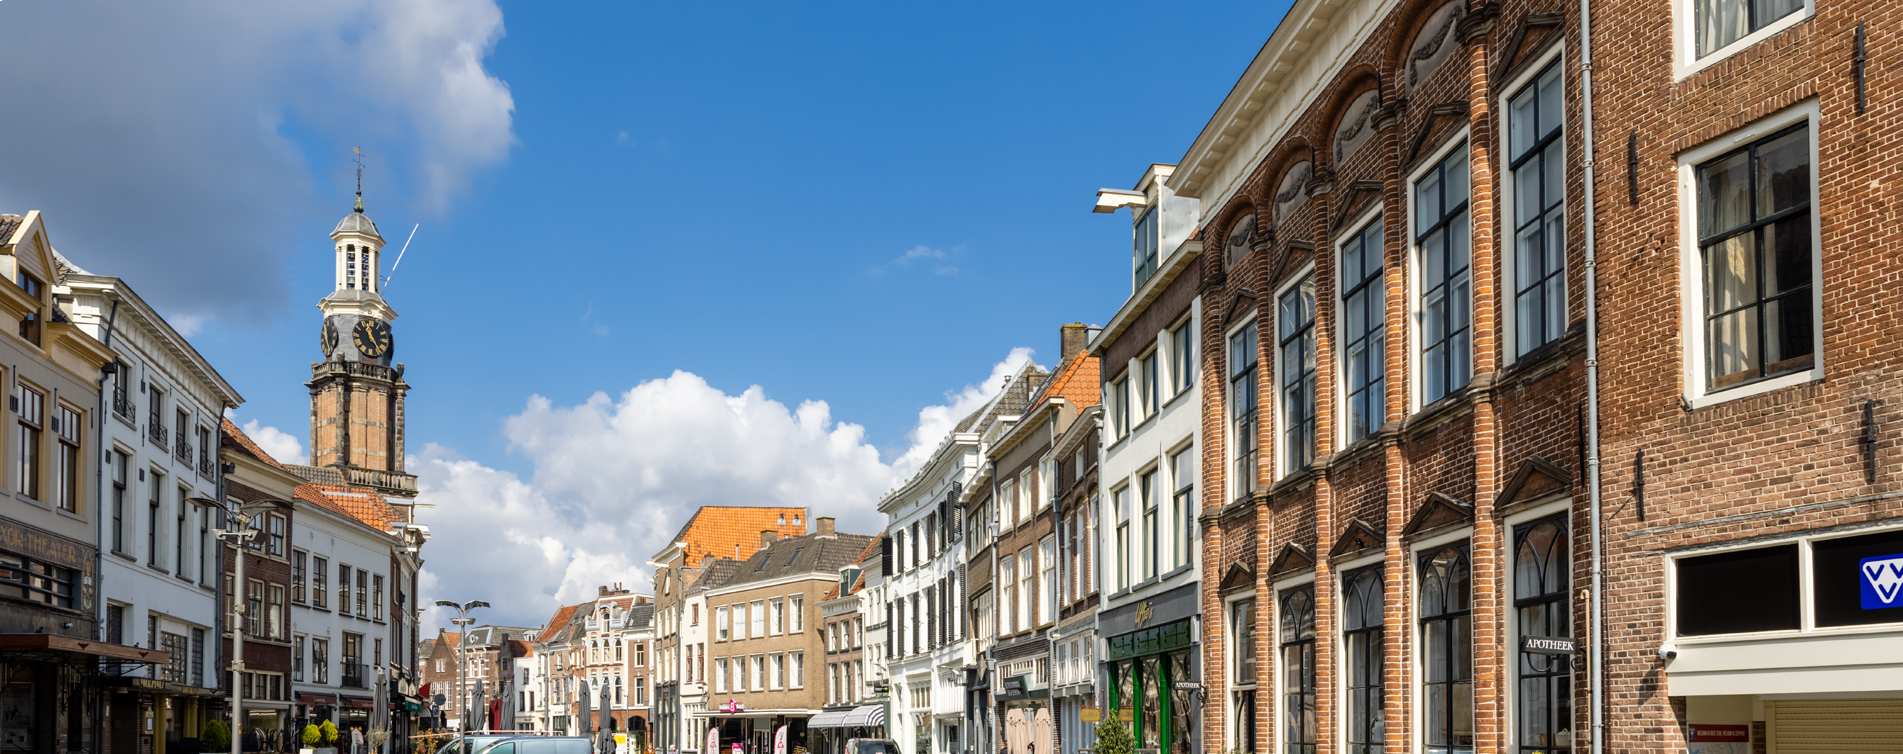 Historische binnenstad van Zutphen - Advidens